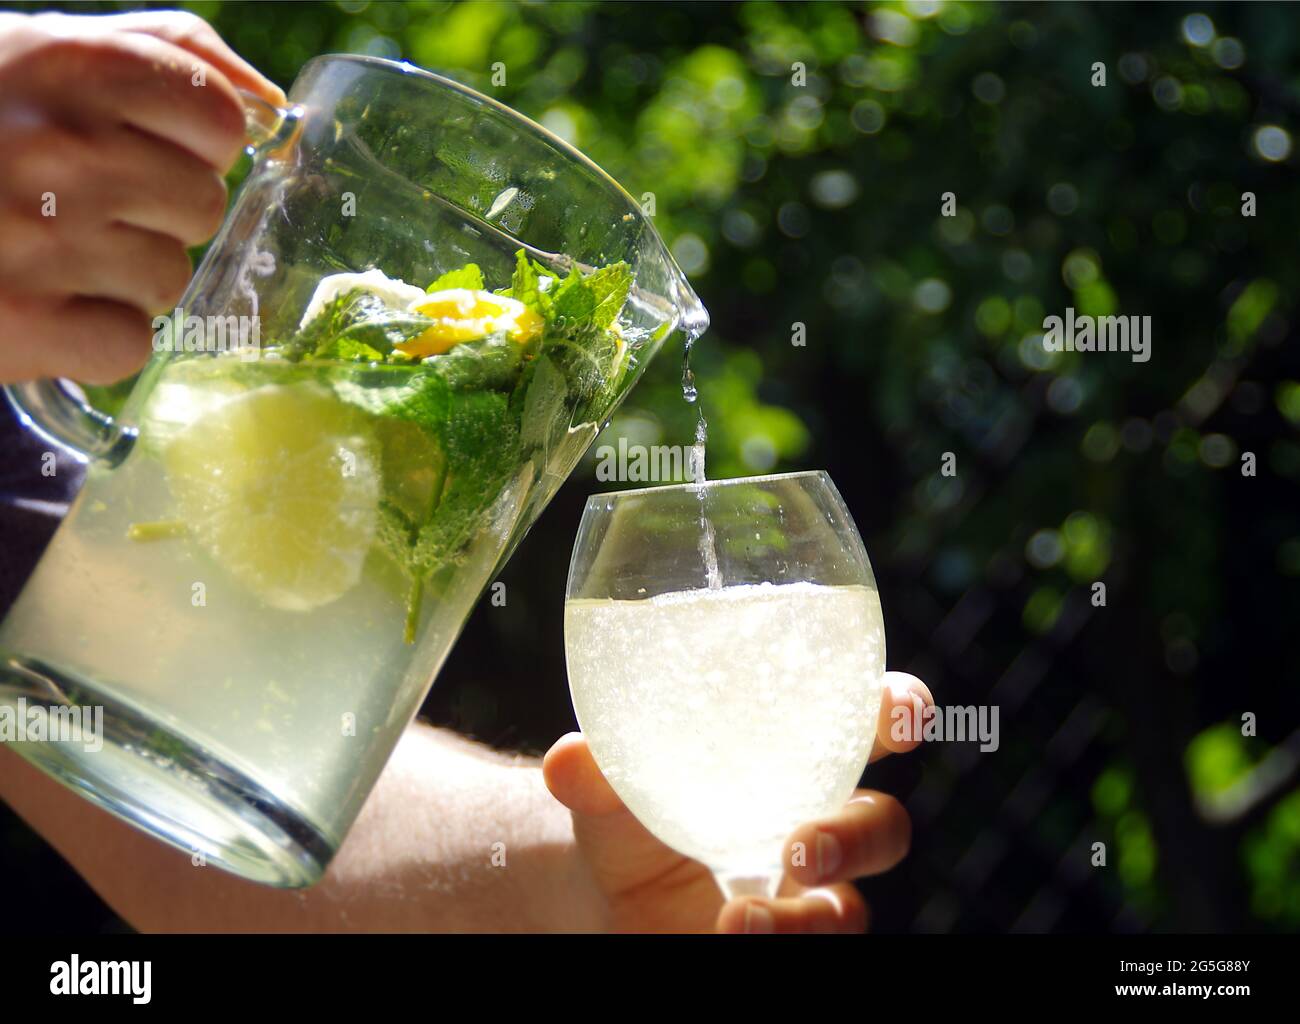 Kühle und frische hausgemachte Limonade. Ein kaltes Zitronengetränk mit Zitrusscheiben, aus einem Krug in ein Glas gegossen. Bio Minzgetränk mit grünen Blättern. Stockfoto